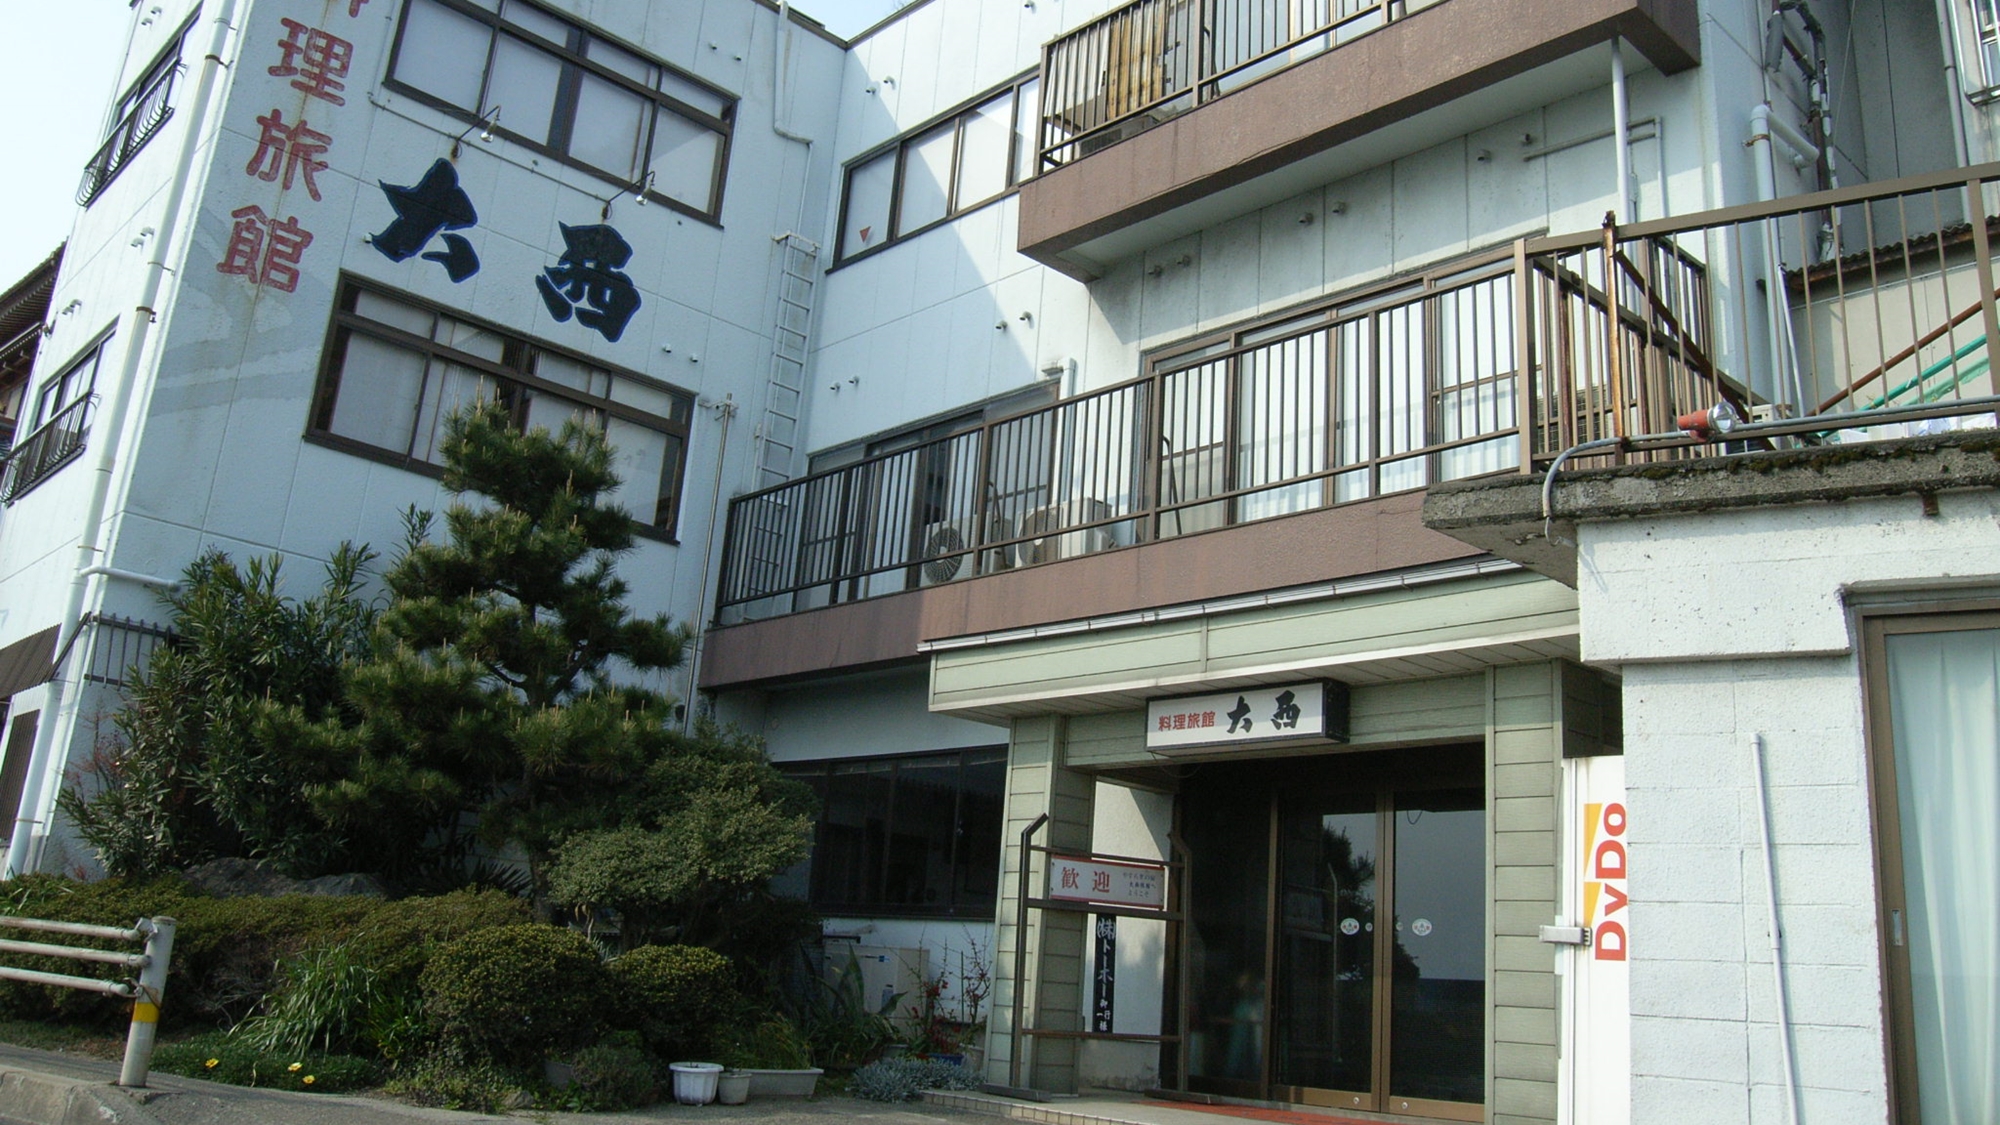 【福井】越前でおすすめのホテルの紹介を求めています